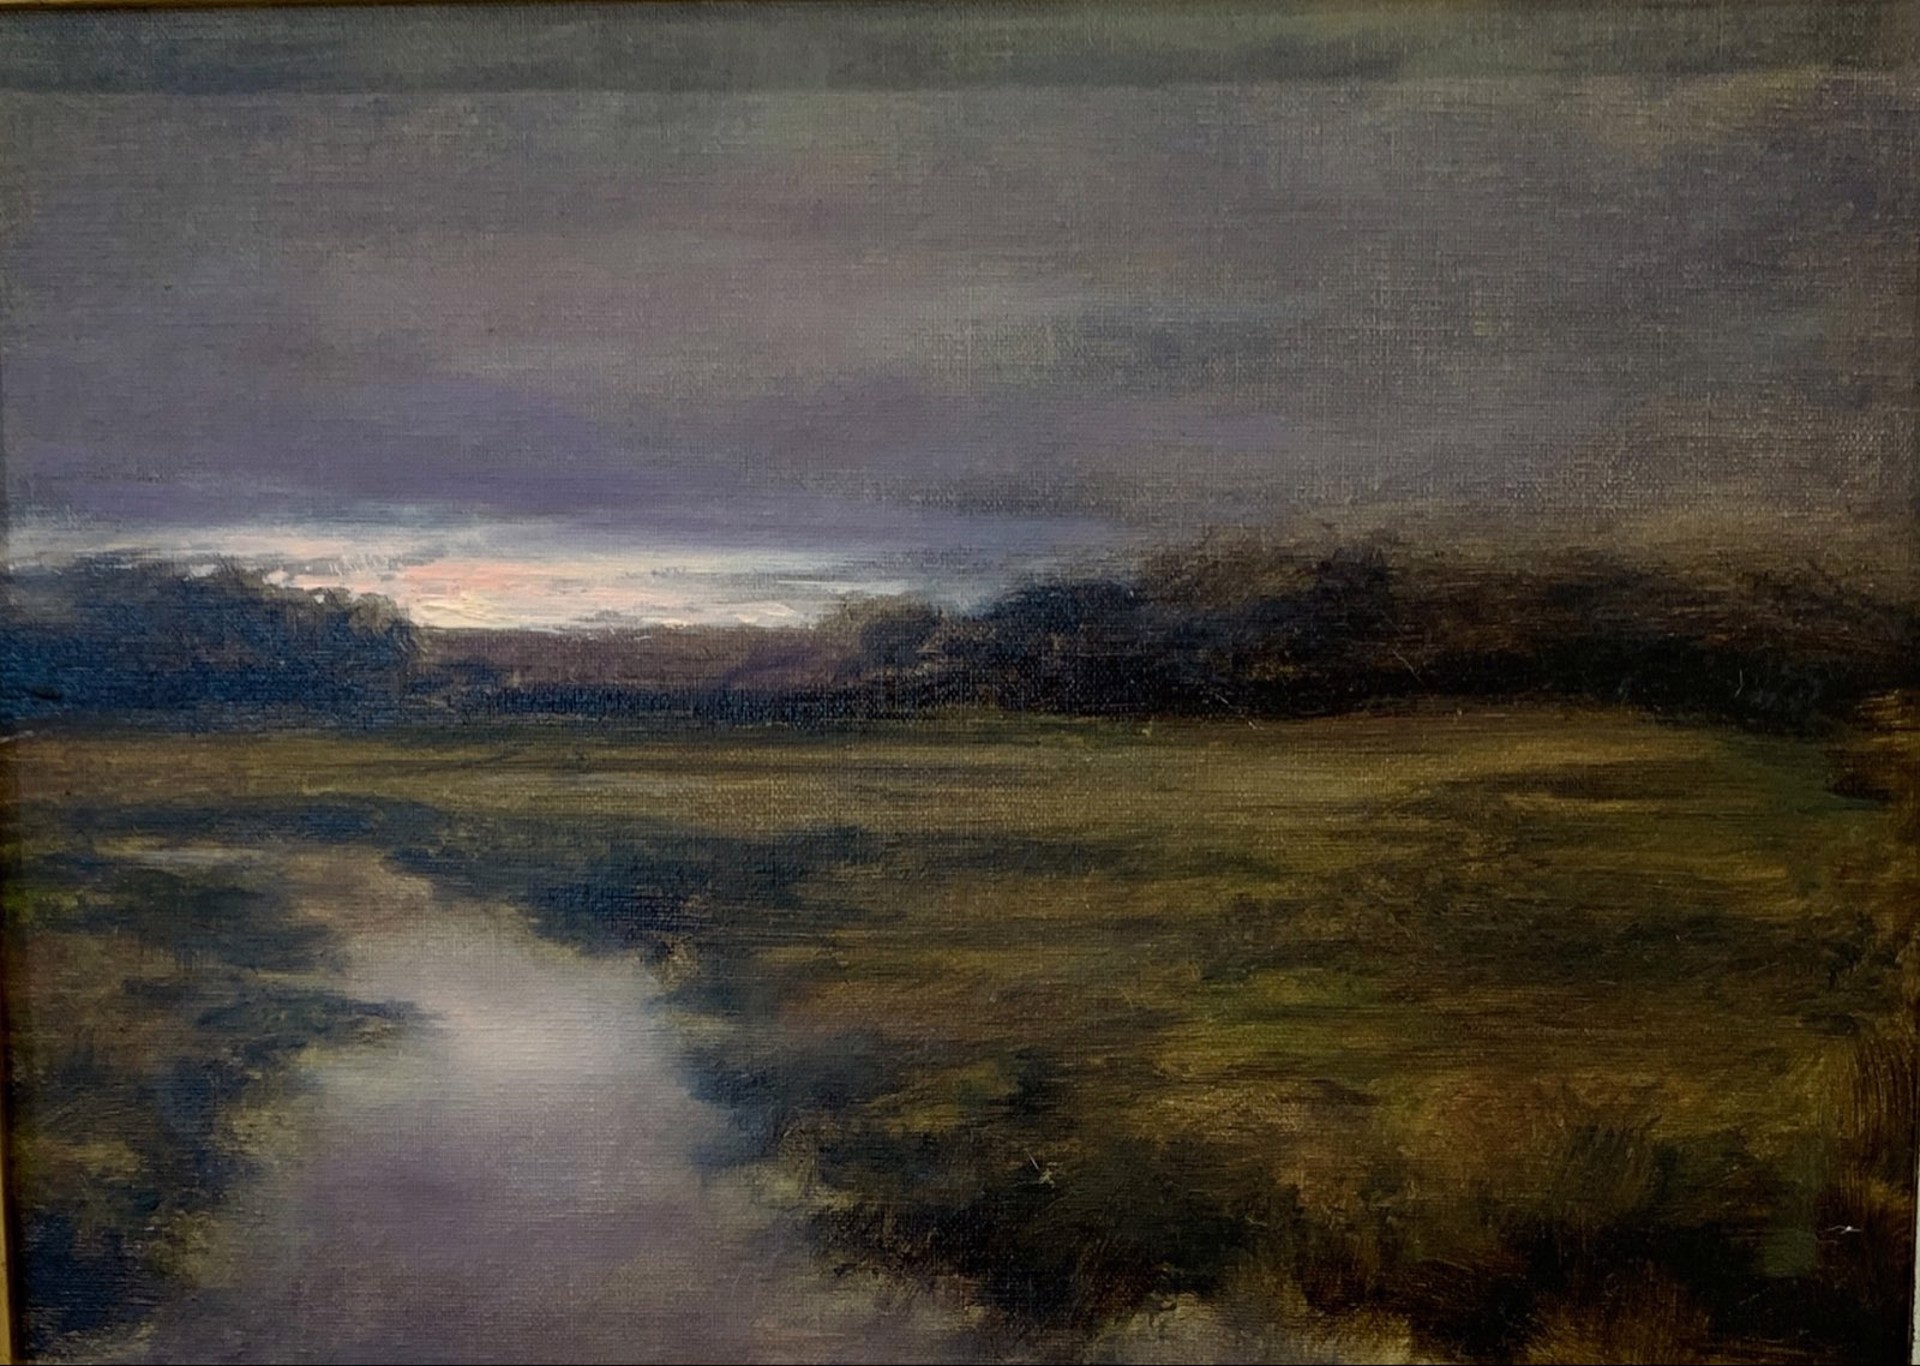 Essex Marsh by Karen Gorczyca